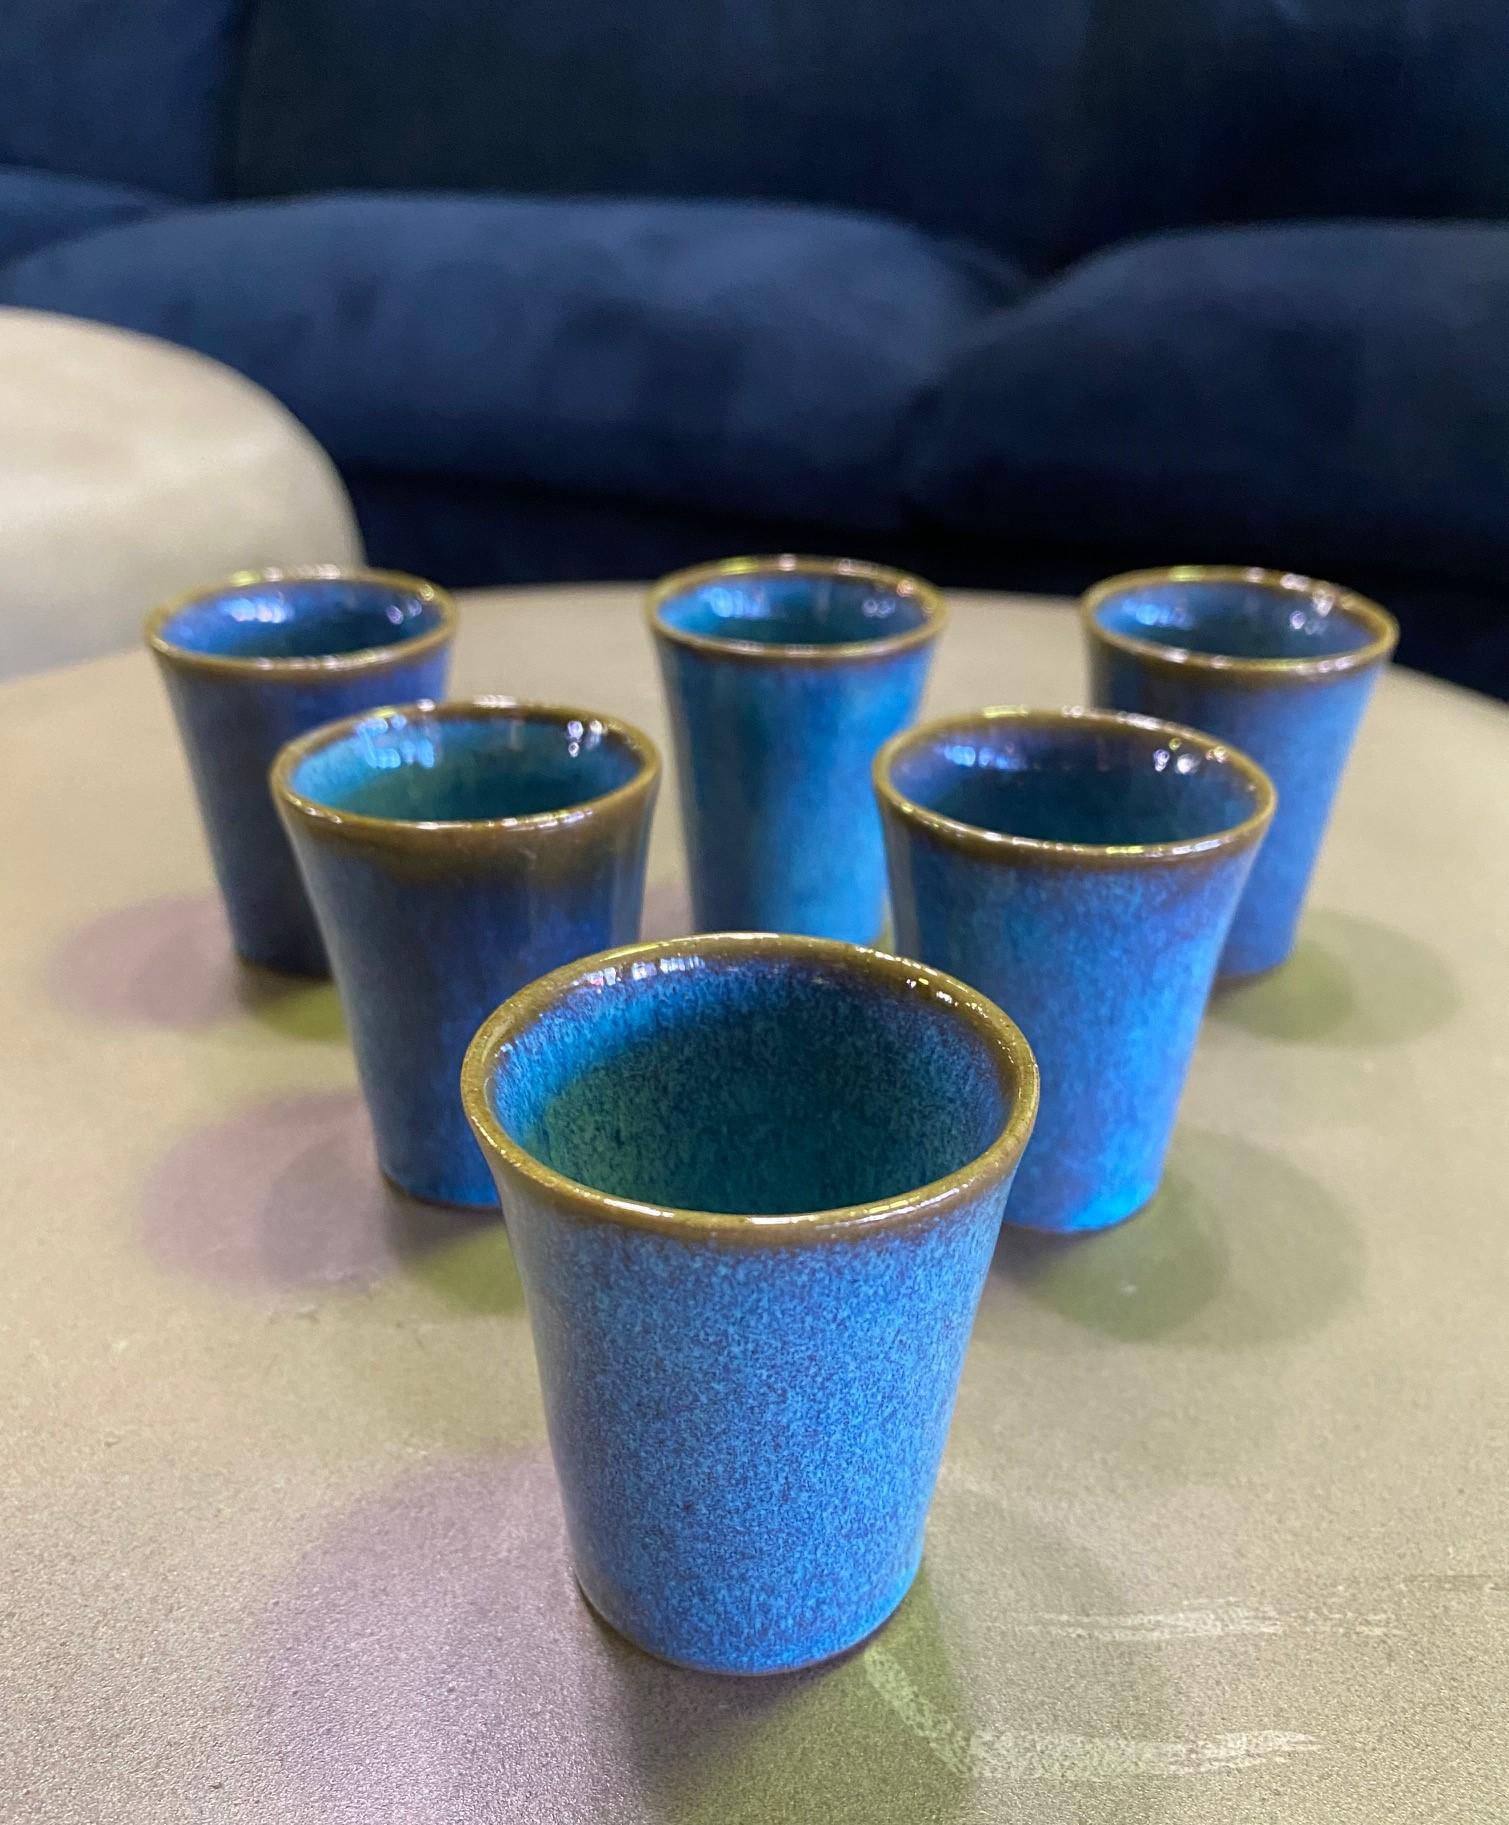 Un ensemble de six tasses à saké/liqueur en céramique, aux formes exquises et à la glaçure bleue profonde, réalisé par le célèbre maître céramiste américain de la côte ouest de la Californie, Harrison McIntosh, célèbre pour ses céramiques de